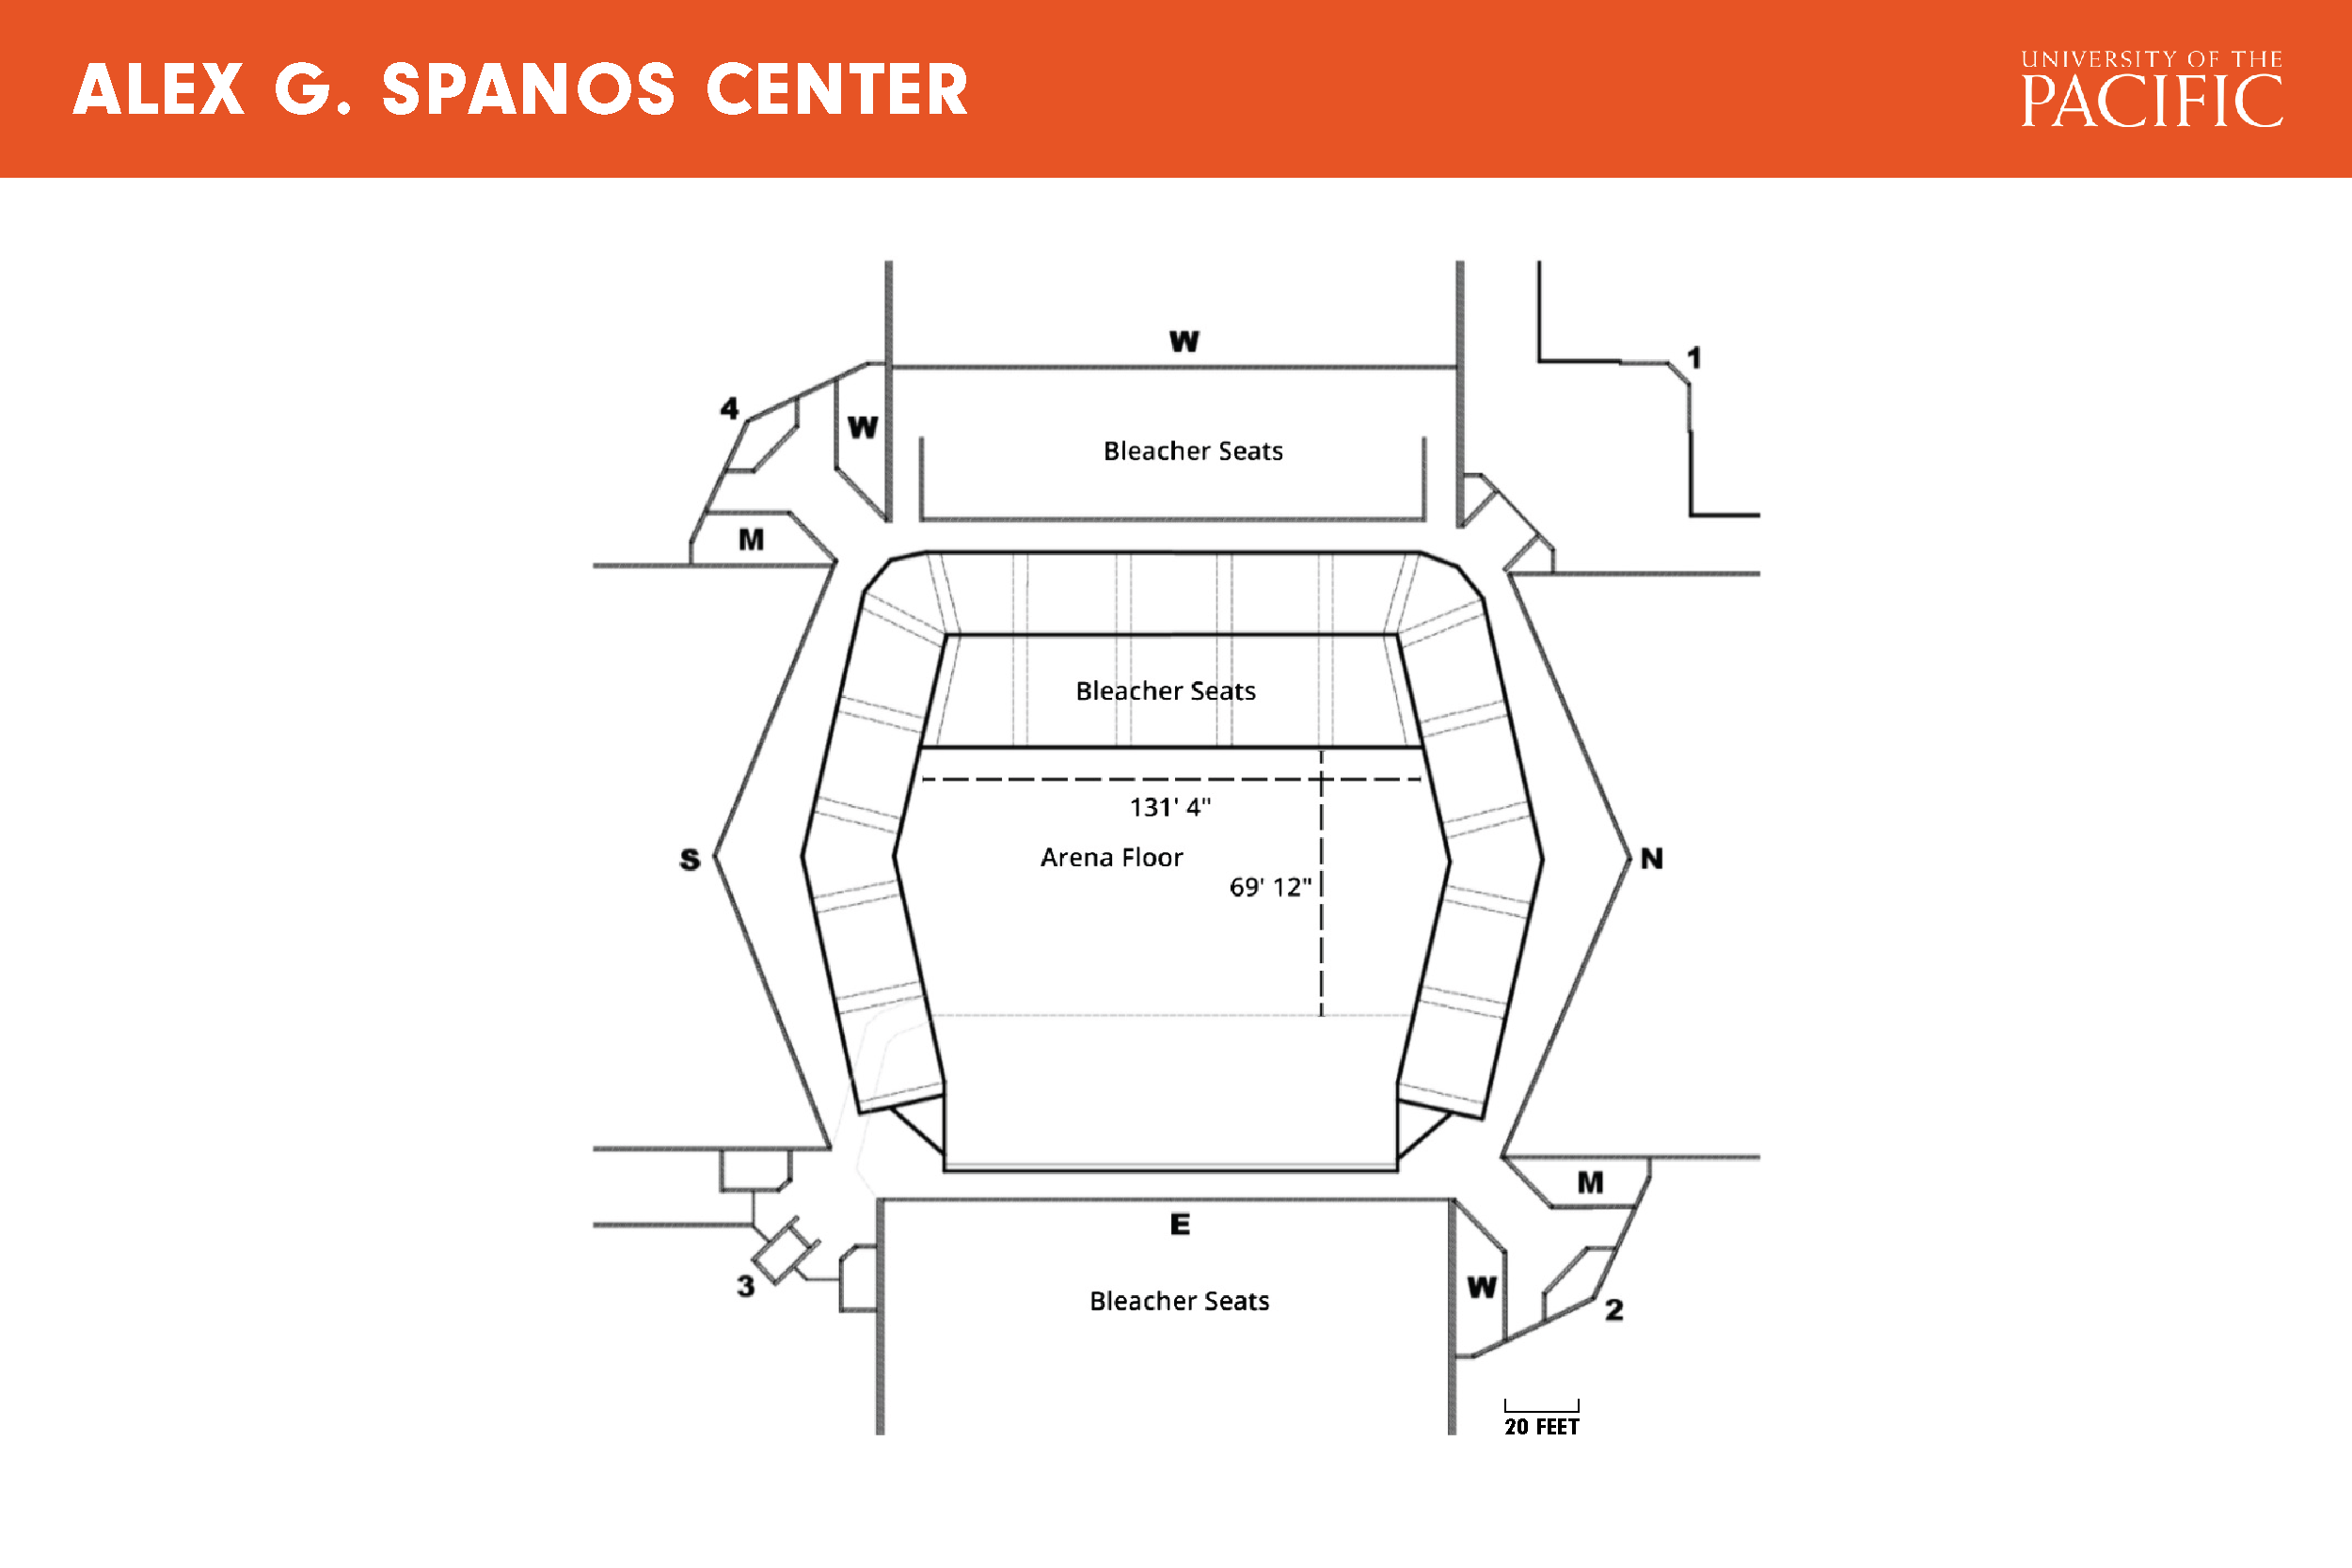 Alex G. Spanos Center floor plan